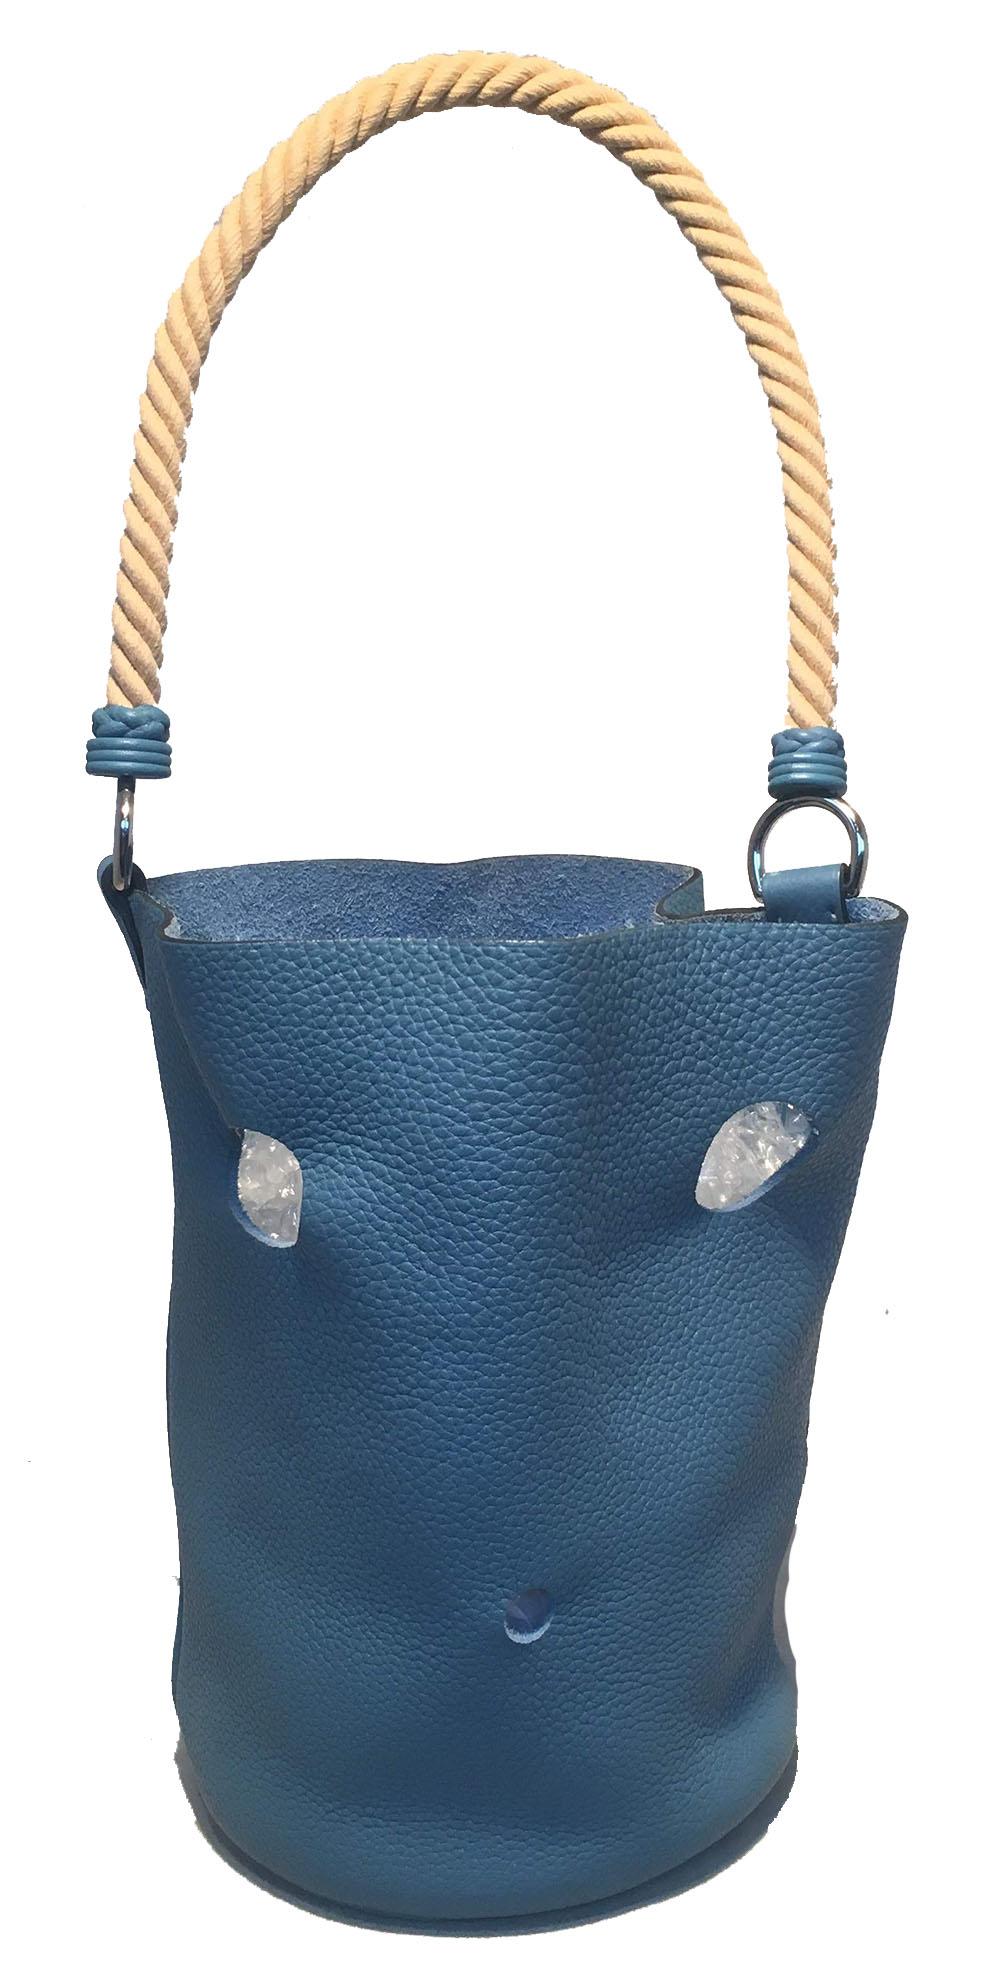 FABULOUS Hermes Blue Jean Taurillon Clemence Leder Mangeoire Rope handle Bucket Bag in ausgezeichnetem Zustand.  Blaues Jeans-Clemence-Leder, mit silbernen Beschlägen und gelaserten Löchern verziert. Oben gedrehter, beigefarbener Seilgriff.